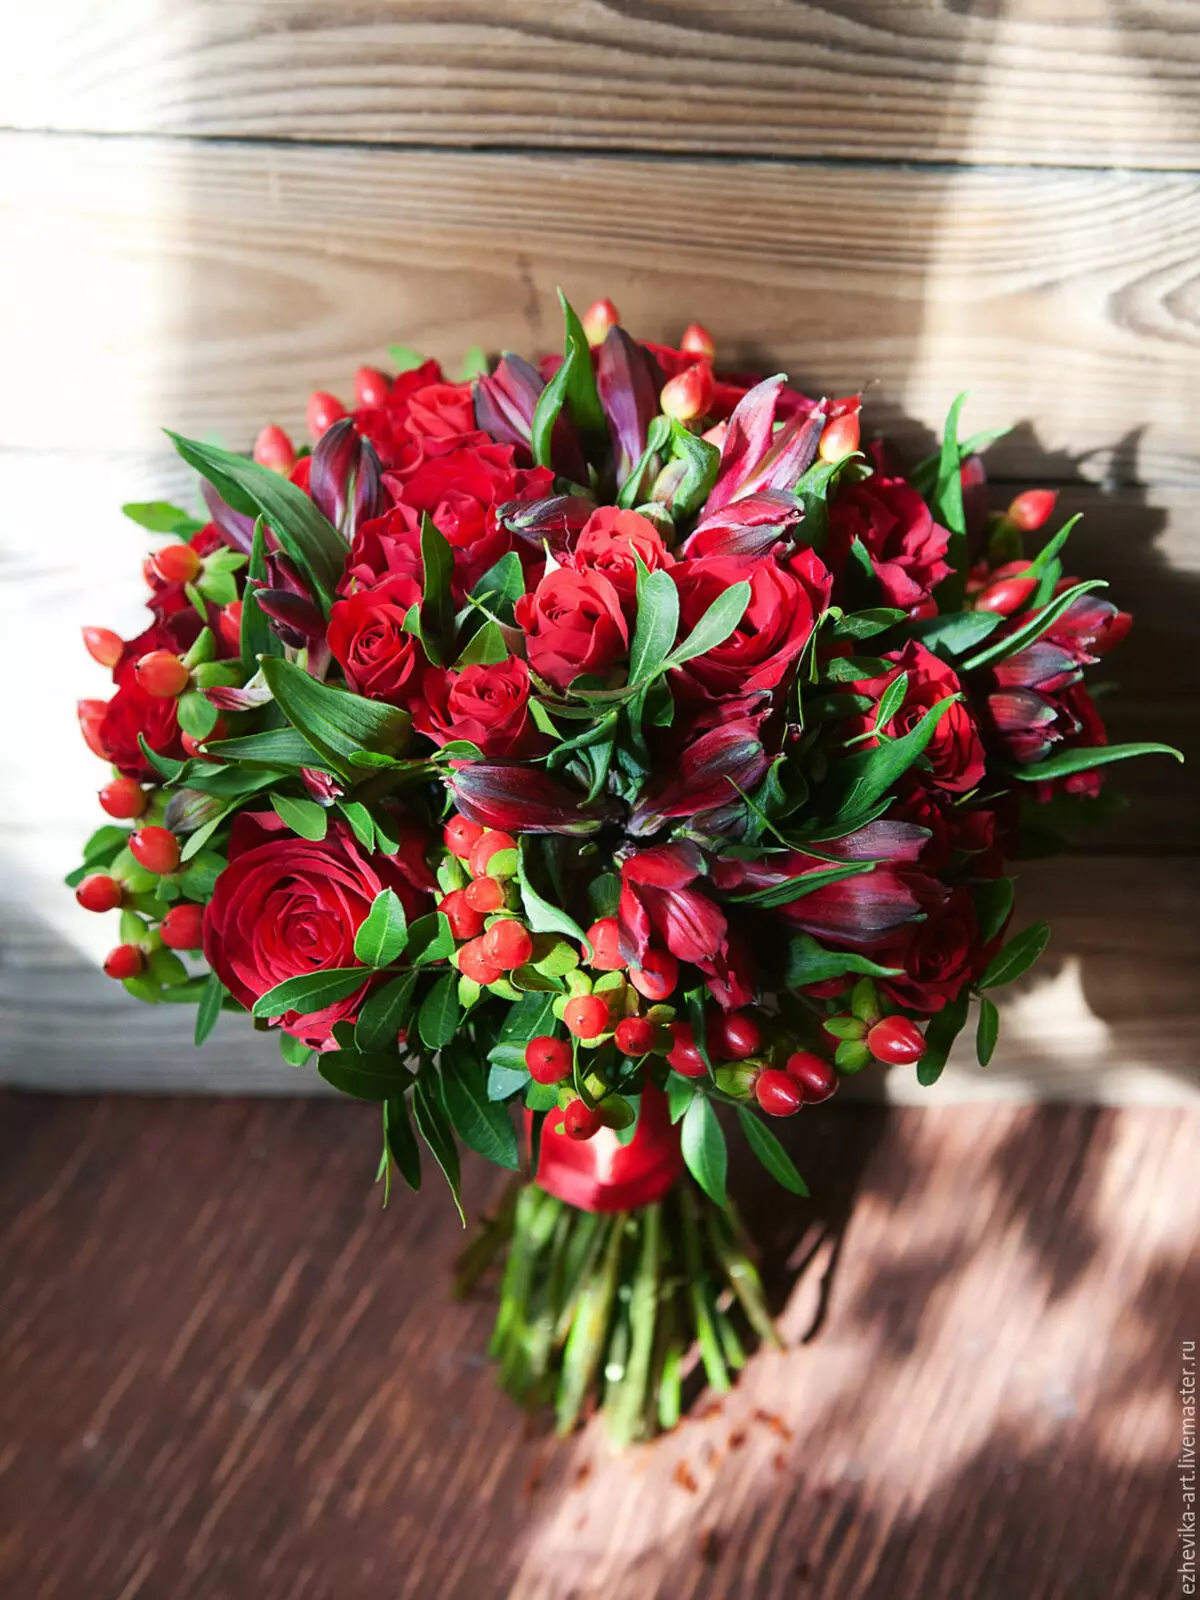 Virágok március 8-án: Mit adnak a lányok és a nők? Mi jobb, ha feleségem adni? Mit adnak el általában? Miért lehetséges a tulipánok megadása? 18190_12